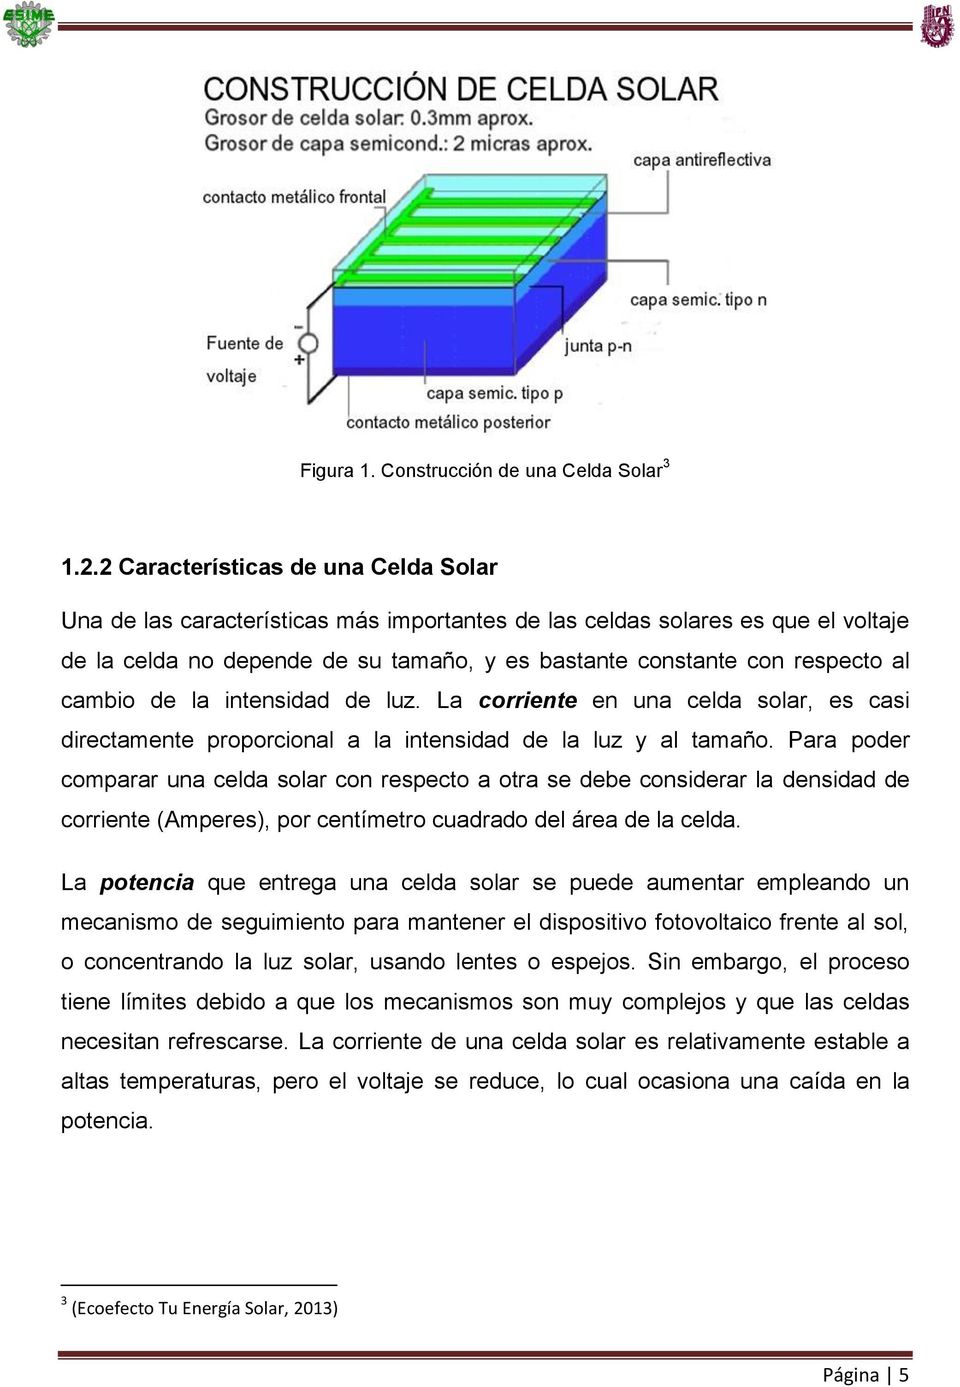 cambio de la intensidad de luz. La corriente en una celda solar, es casi directamente proporcional a la intensidad de la luz y al tamaño.